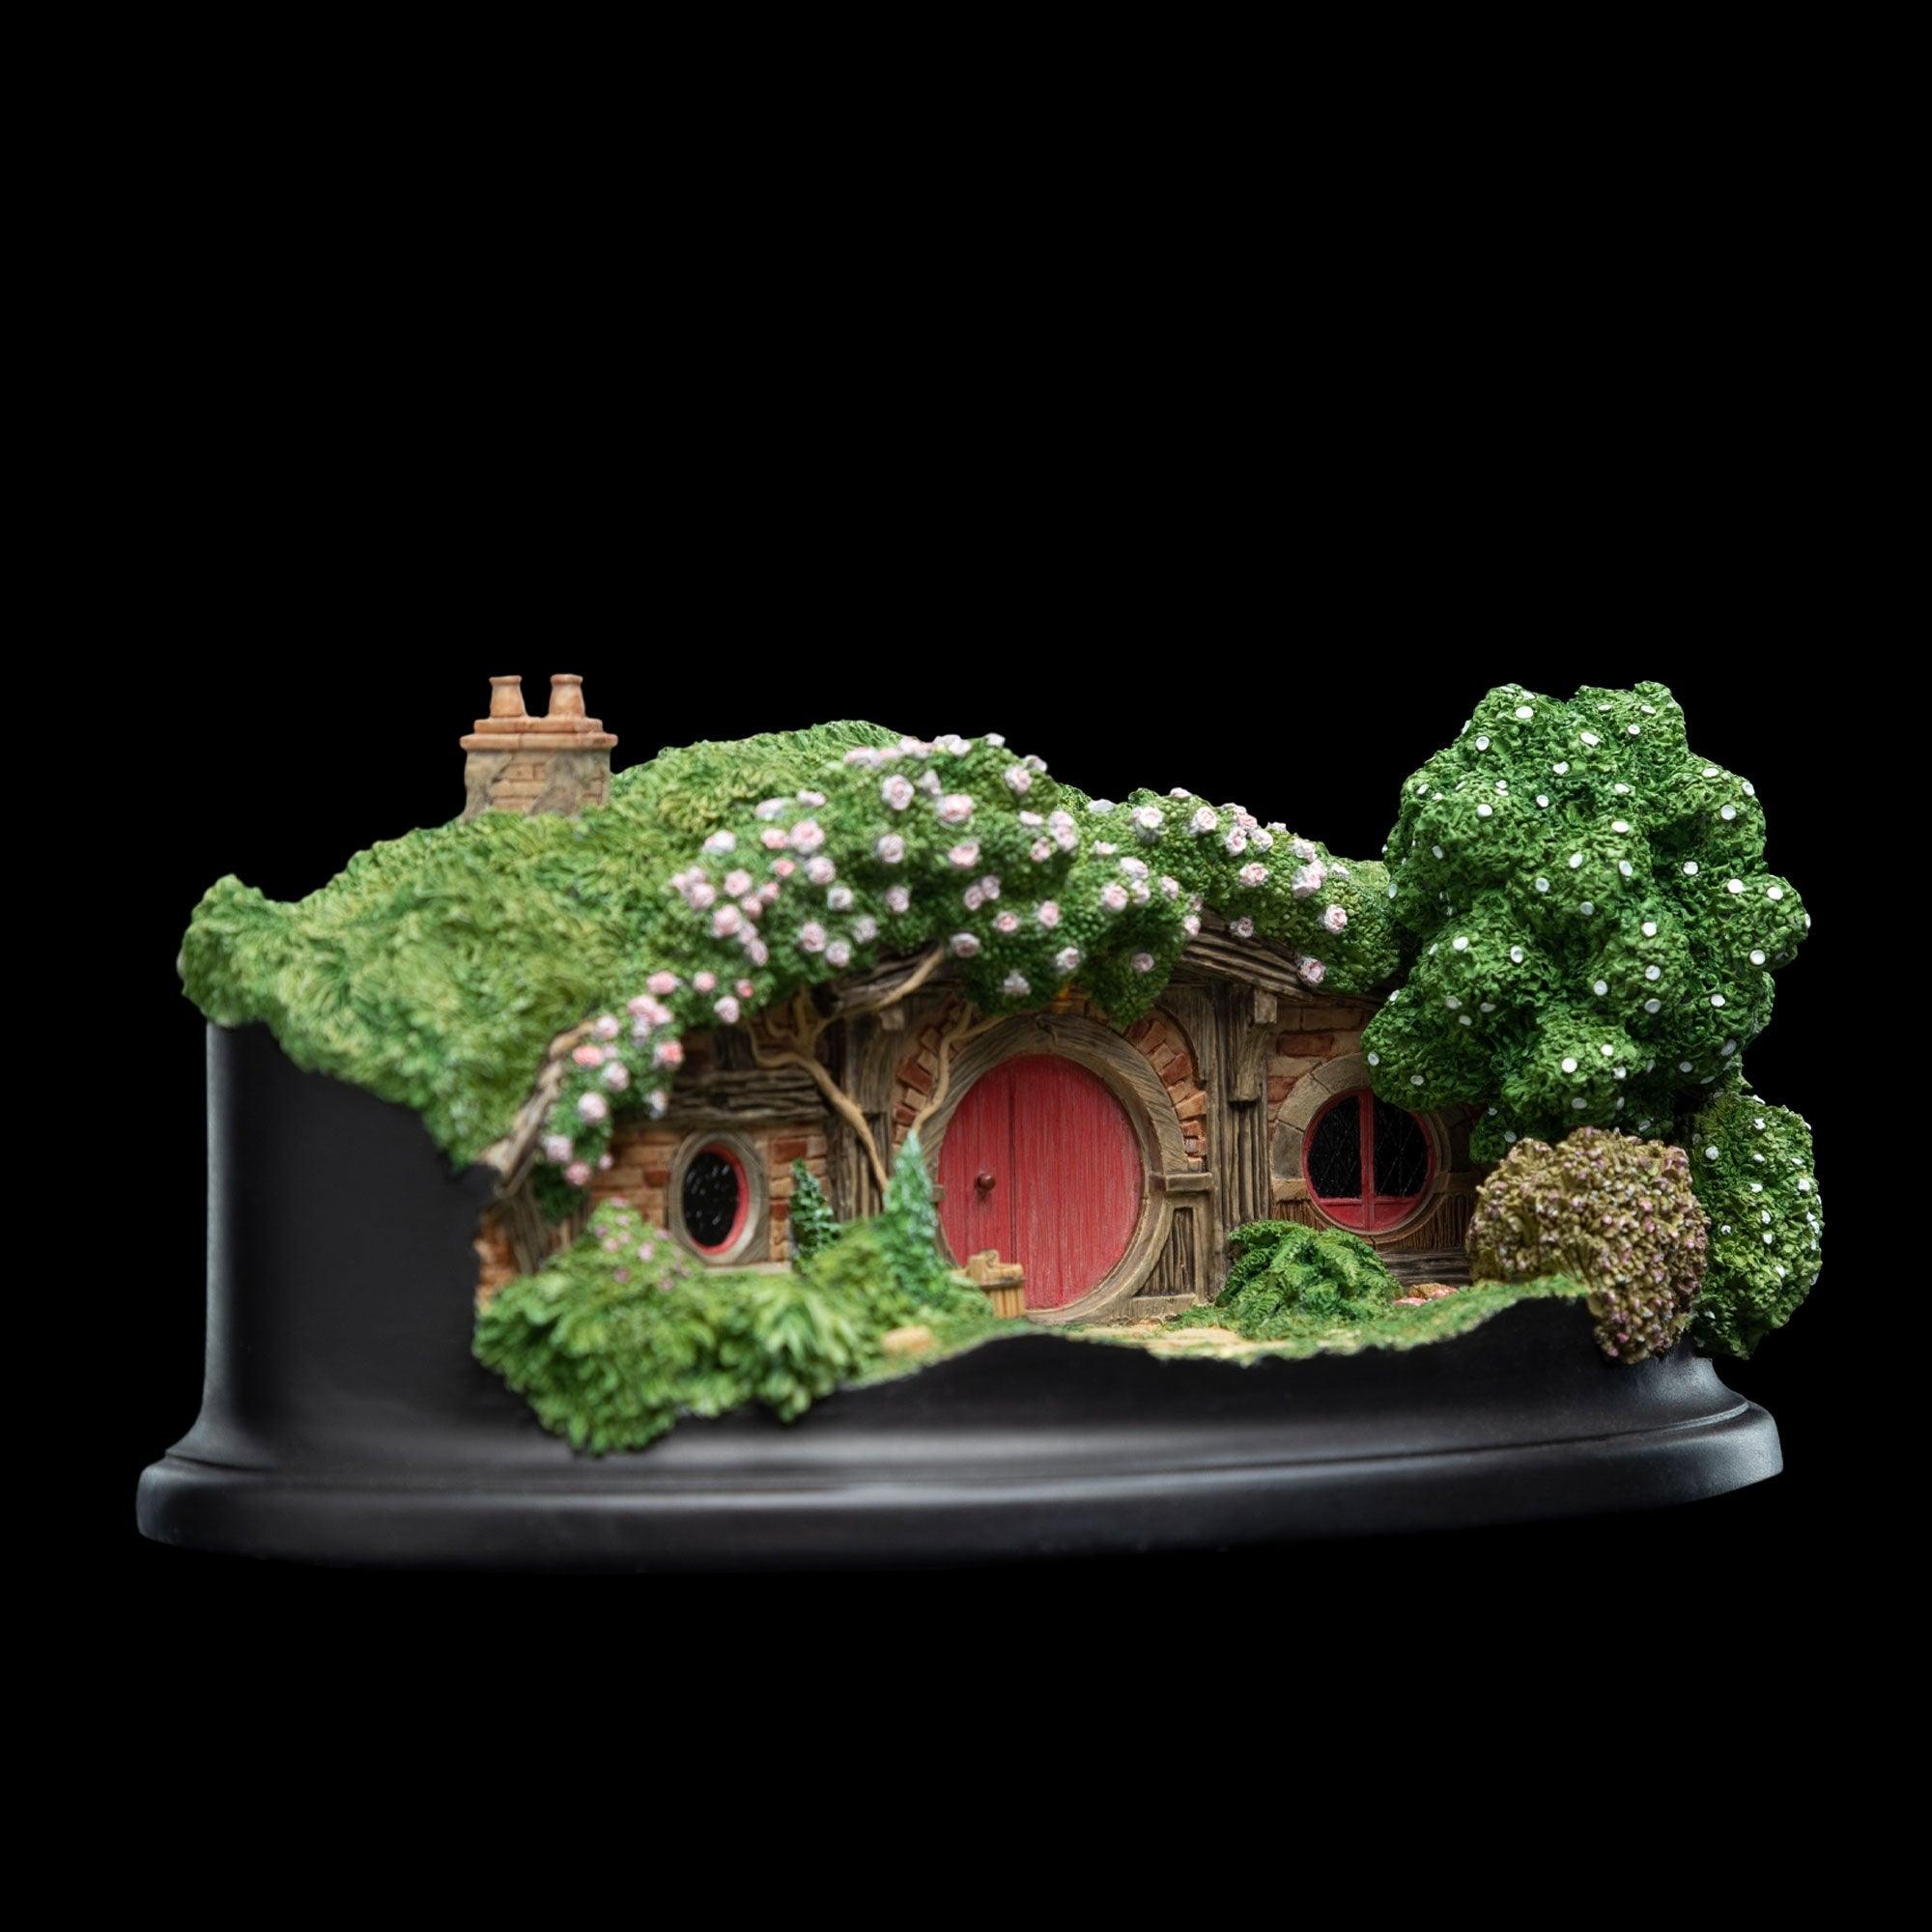 WET04225 The Hobbit - #22 Pine Grove Hobbit Hole Diorama - Weta Workshop - Titan Pop Culture